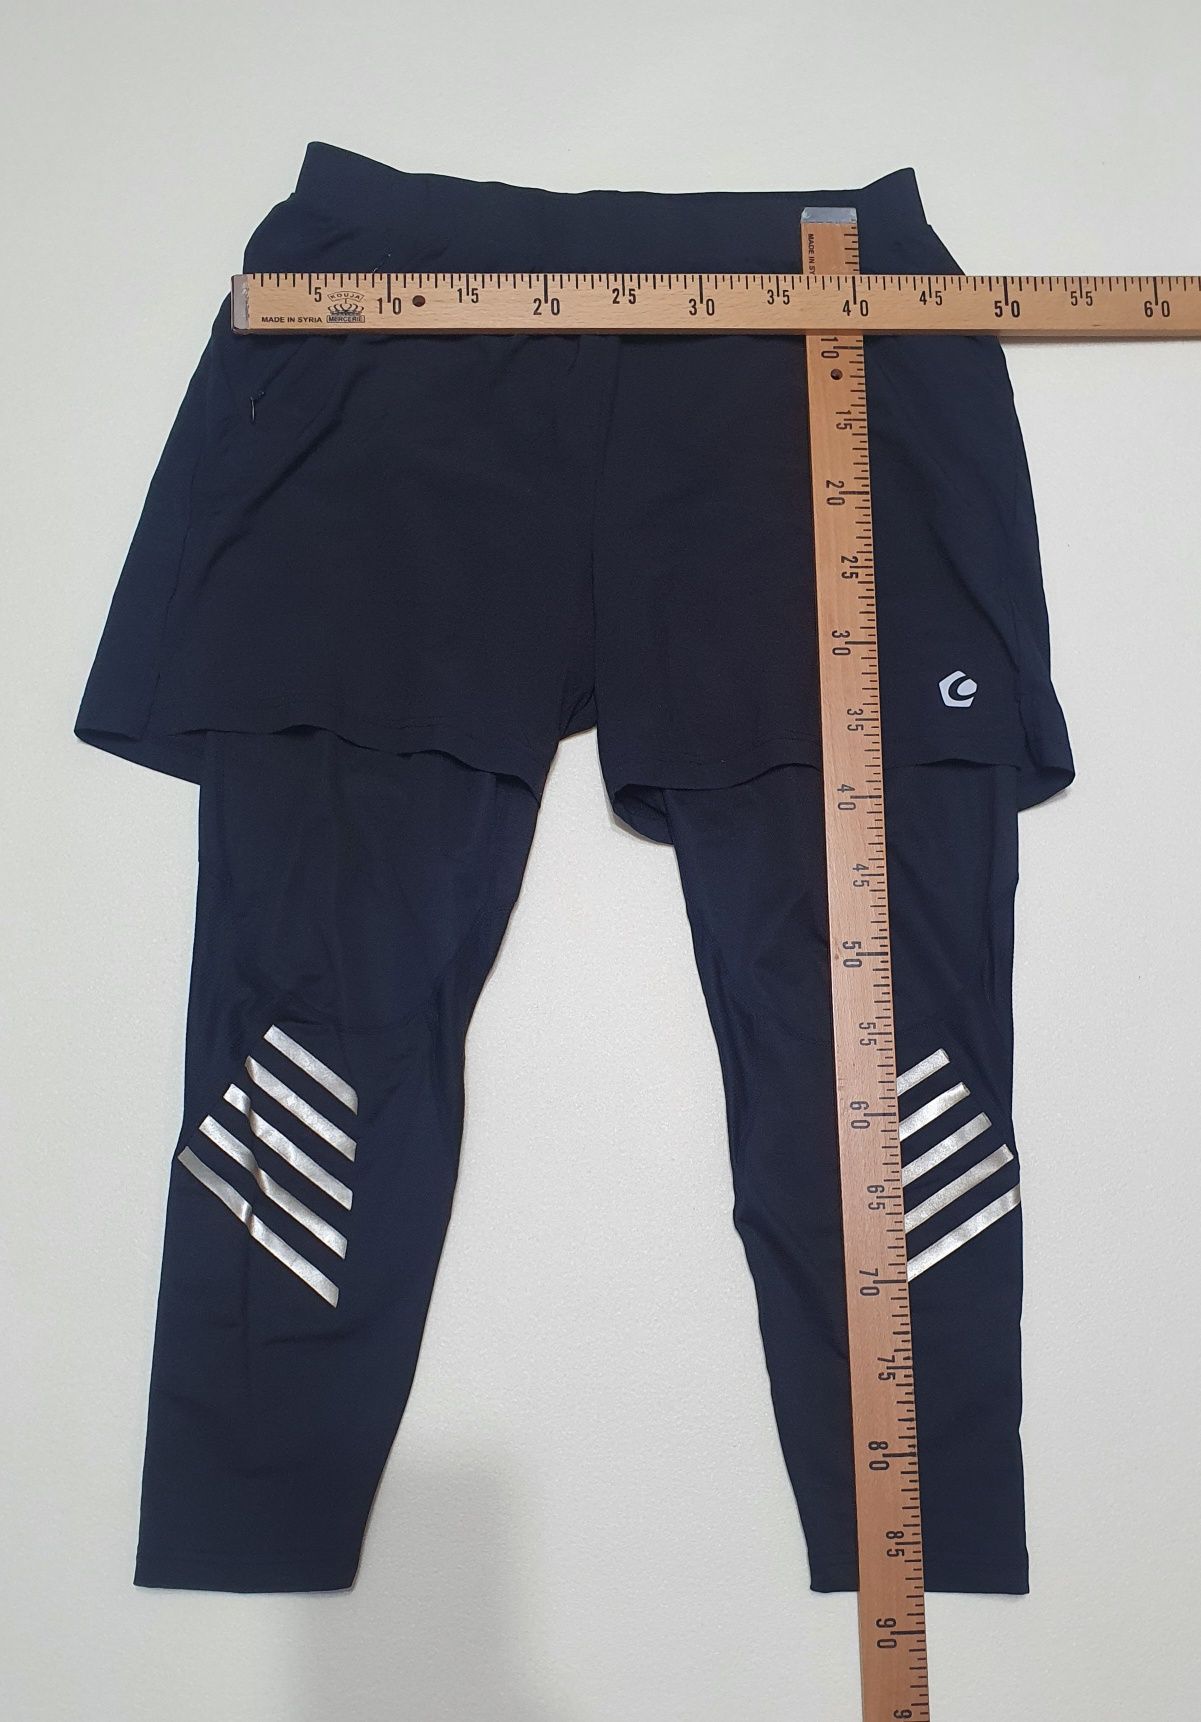 Pantaloni barbati lungi + scurti pentru alergare Gregster Pro XL